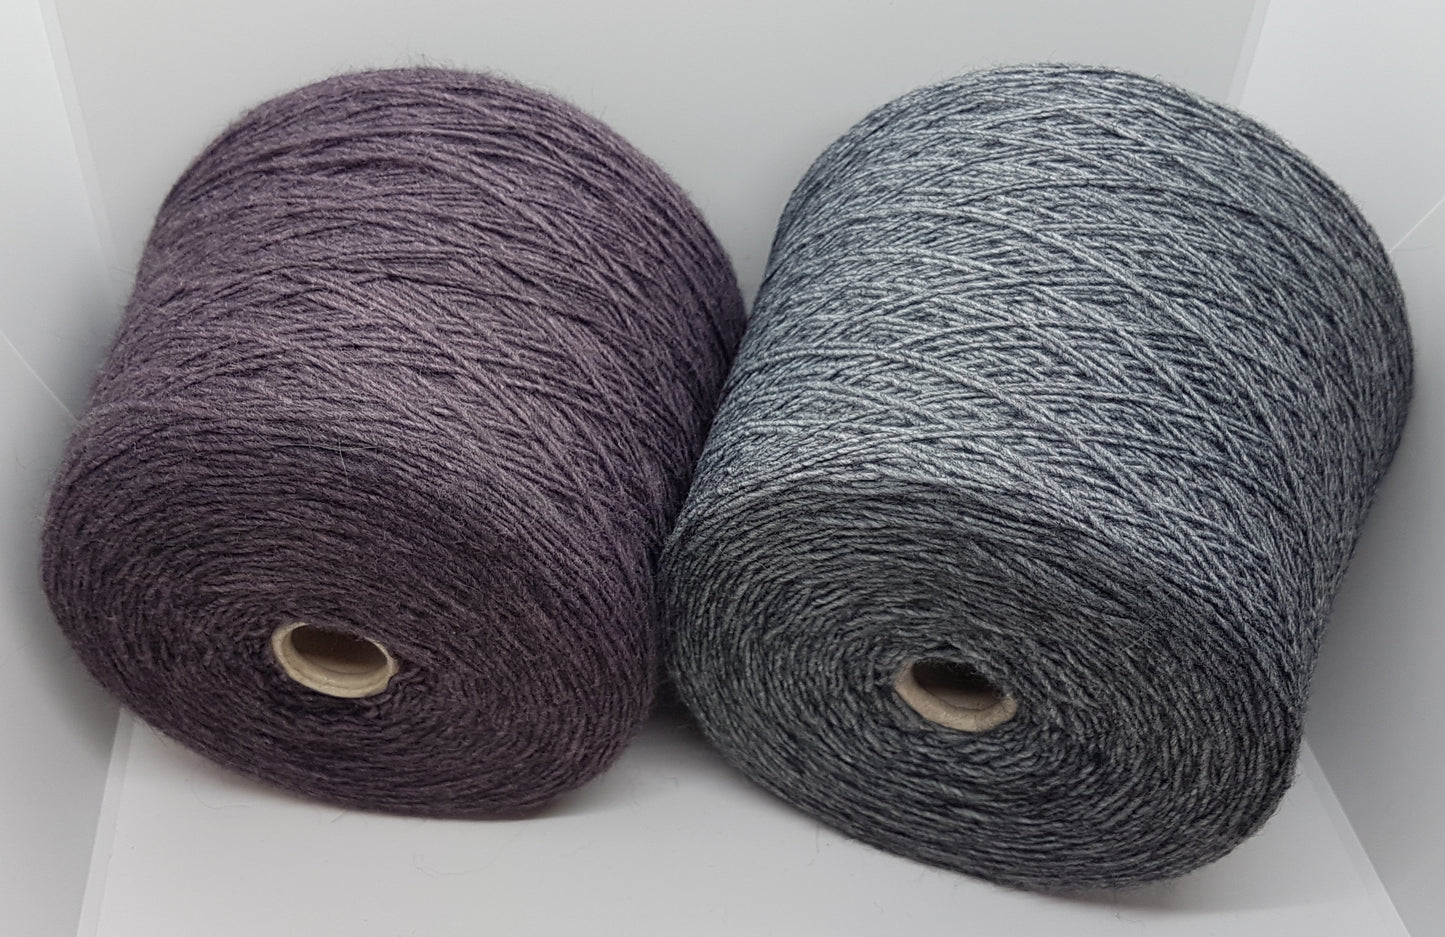 100g Virgin Wool Alpaca italiensk garn farve Grå og Grå-lilla N.187